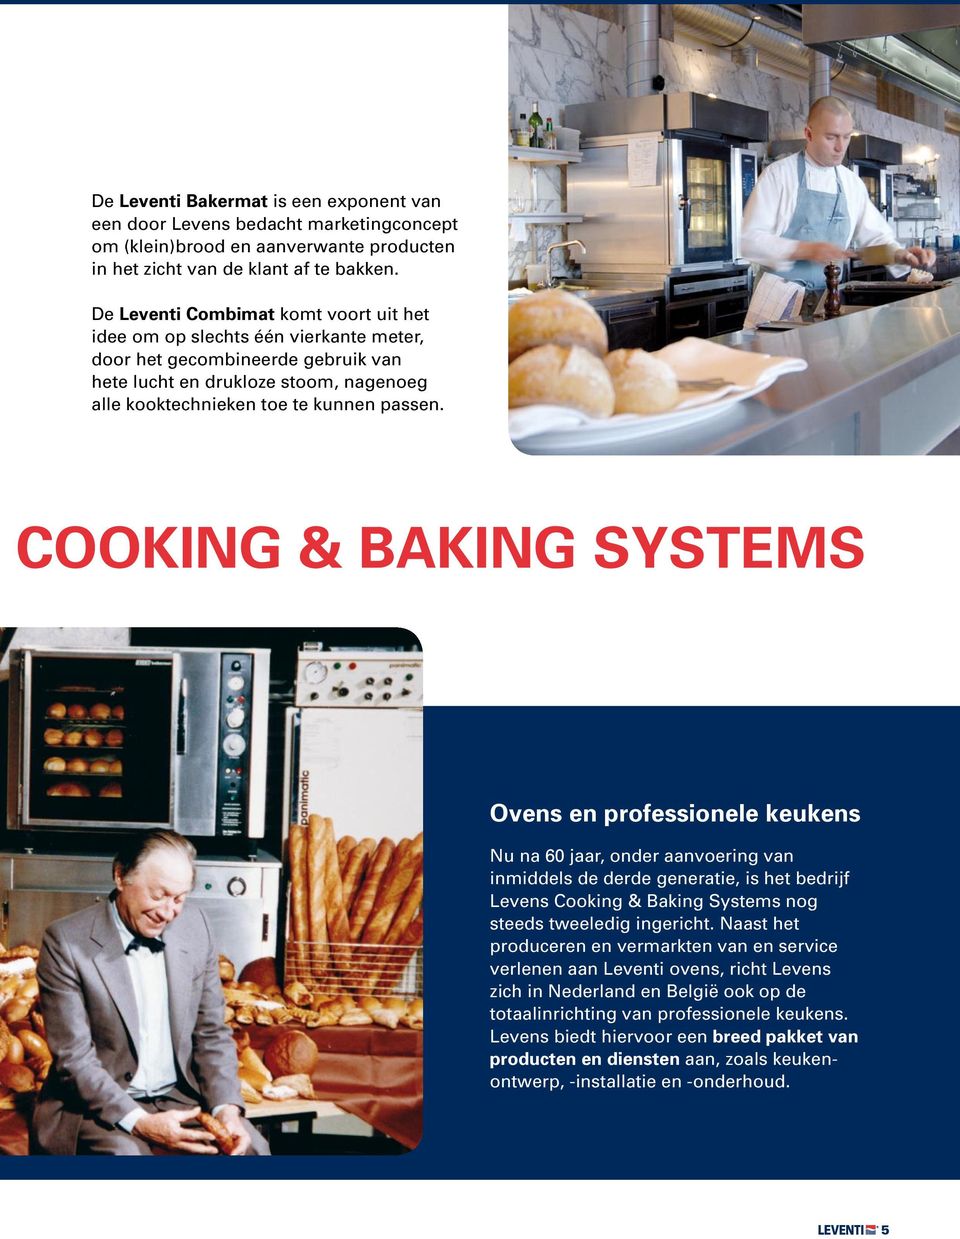 COOKING & BAKING SYSTEMS Ovens en professionele keukens Nu na 60 jaar, onder aanvoering van inmiddels de derde generatie, is het bedrijf Levens Cooking & Baking Systems nog steeds tweeledig ingericht.